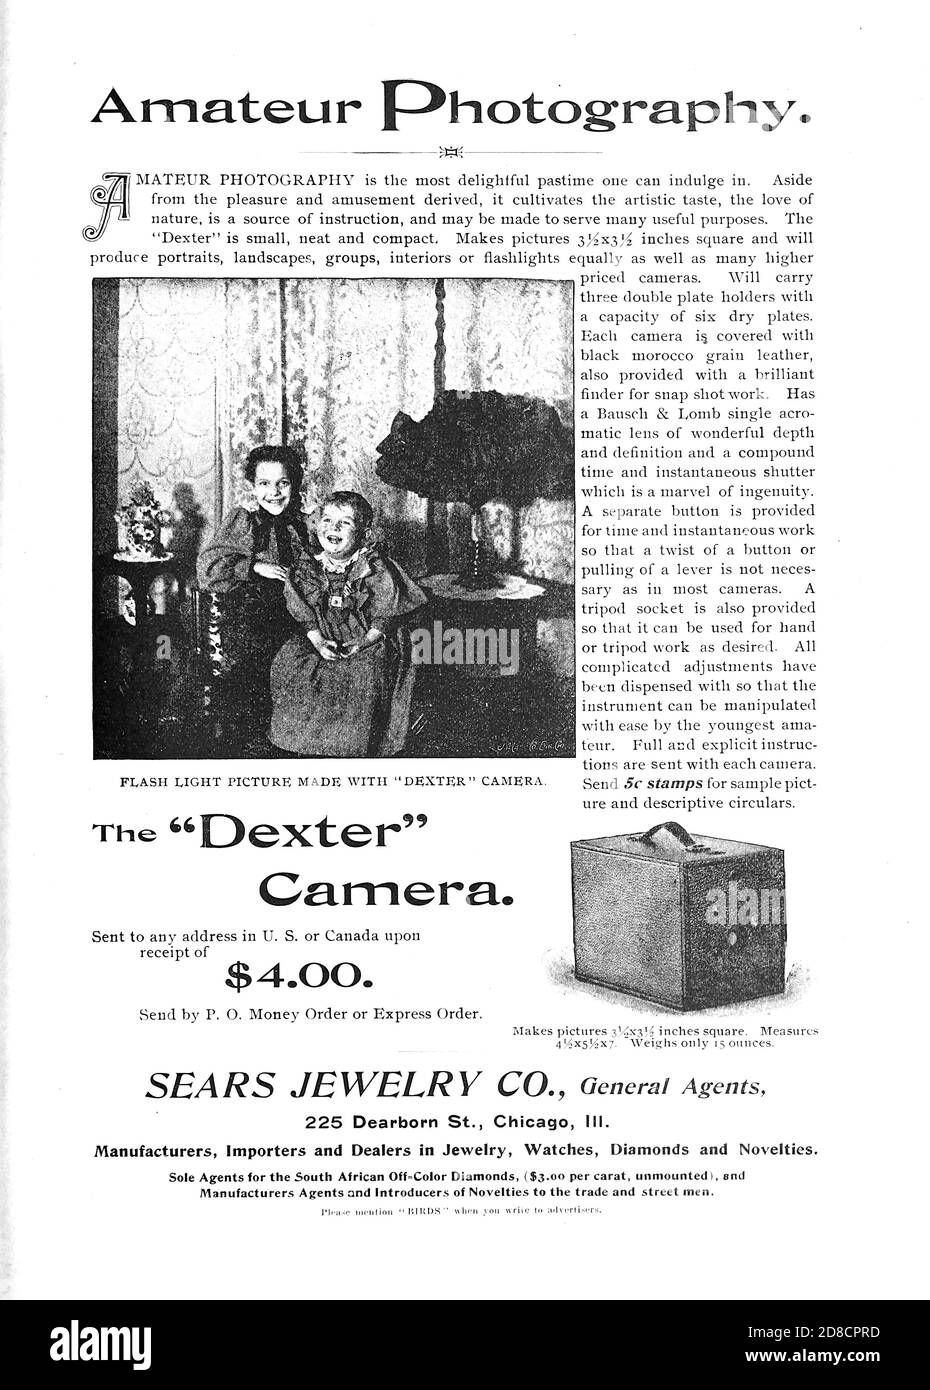 Fotografía amateur el anuncio de Dexter Camera apareció en una revista mensual llamada 'pájaros: Ilustrado por la fotografía en color' una serie mensual. Conocimiento de la vida de las aves en 1897. Foto de stock